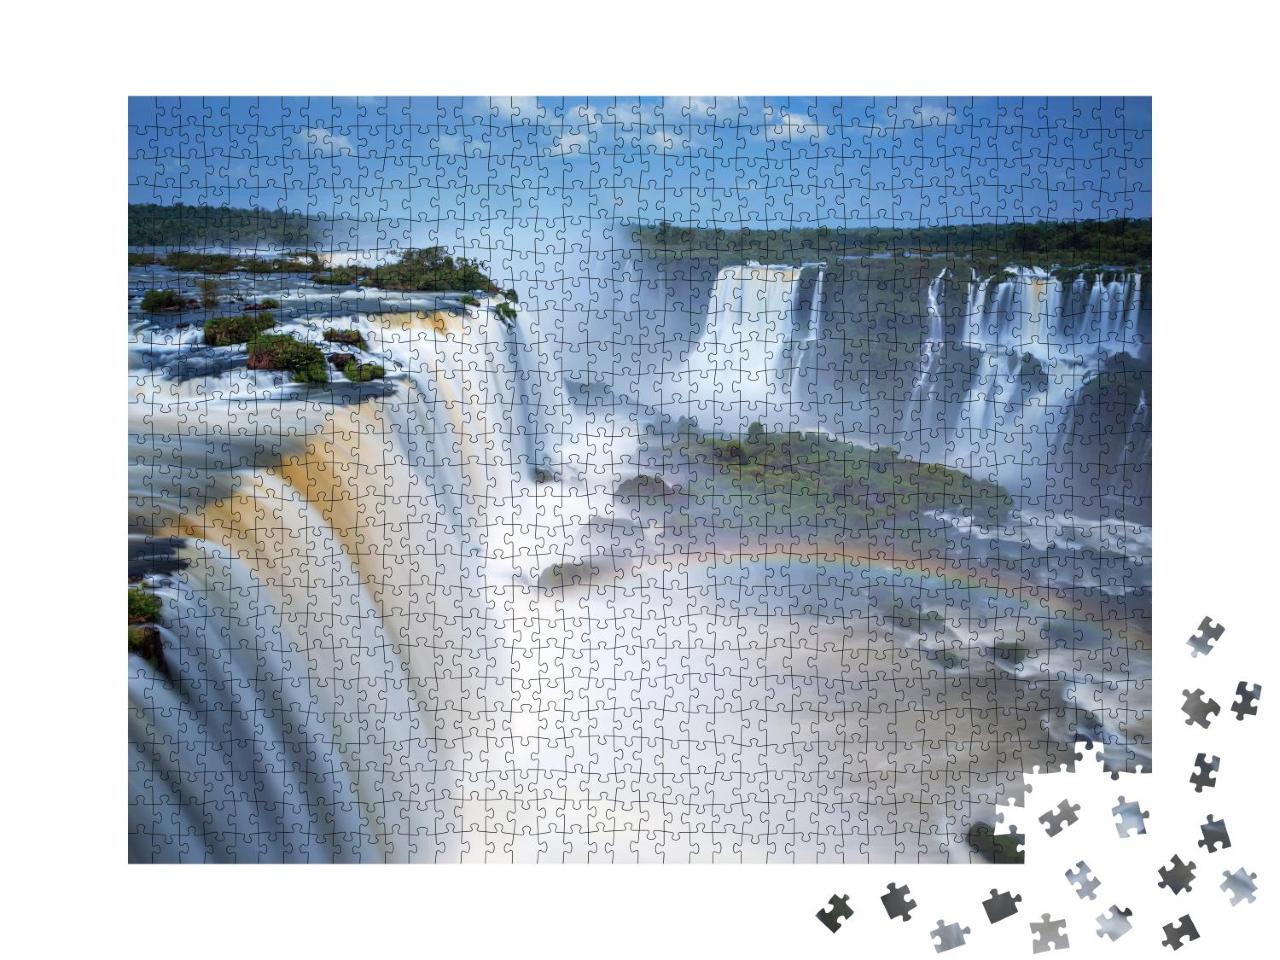 Puzzle 1000 Teile „Iguazu-Wasserfälle in Brasilien und Argentinien“